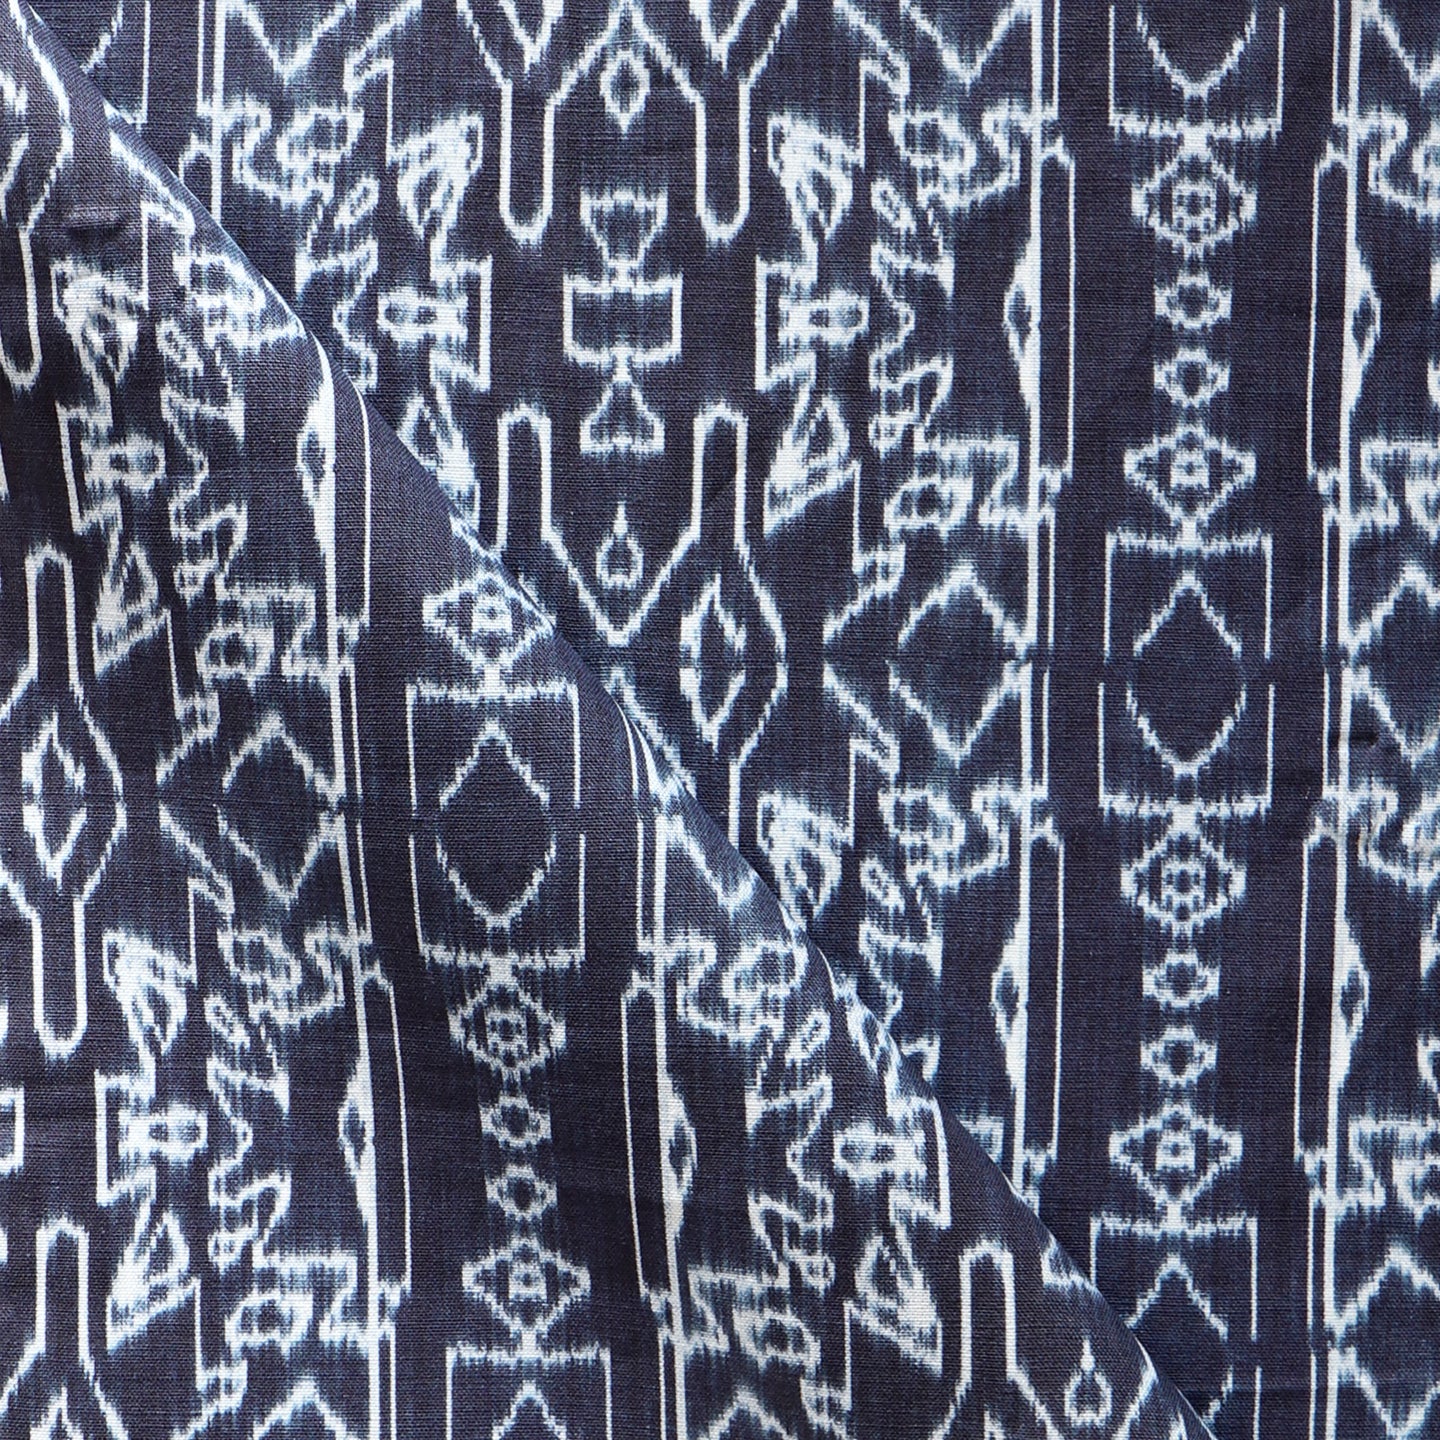 A close up of an indigo fabric